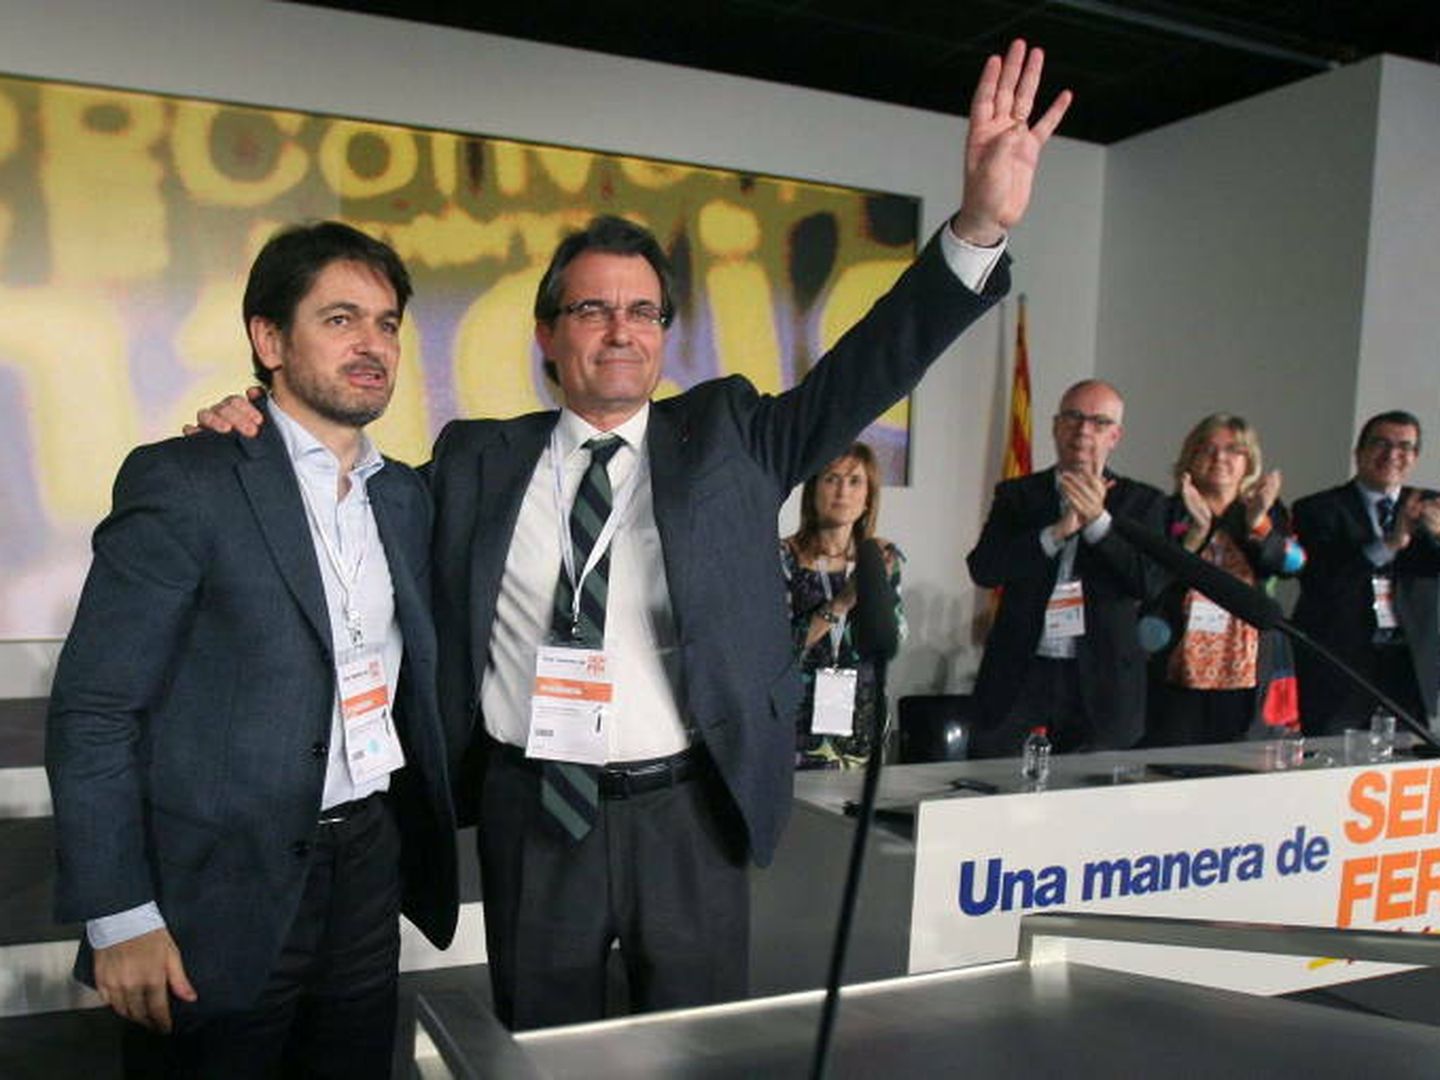 Congreso convergencia democrática de cataluña